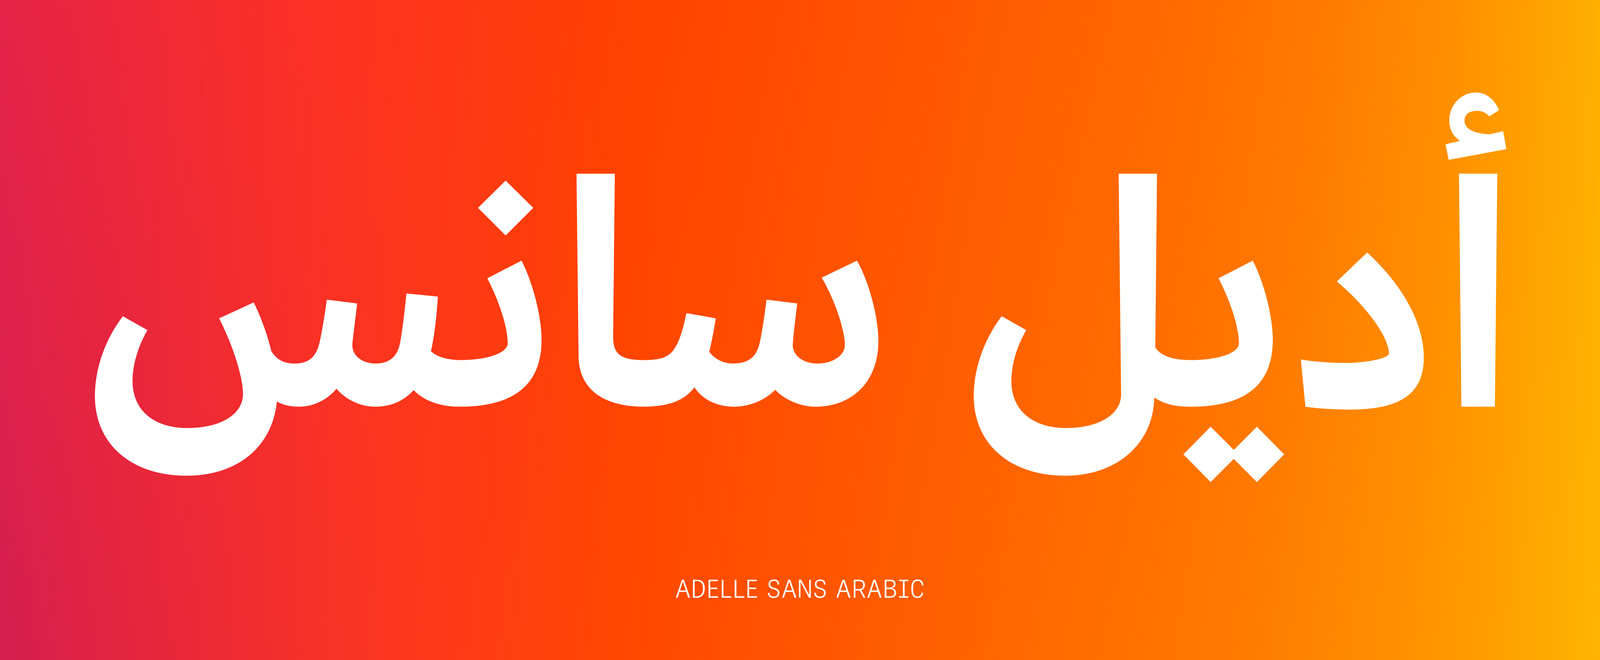 Adelle Sans Arabic designed by José Scaglione & Veronika Burian & Azza Alameddine